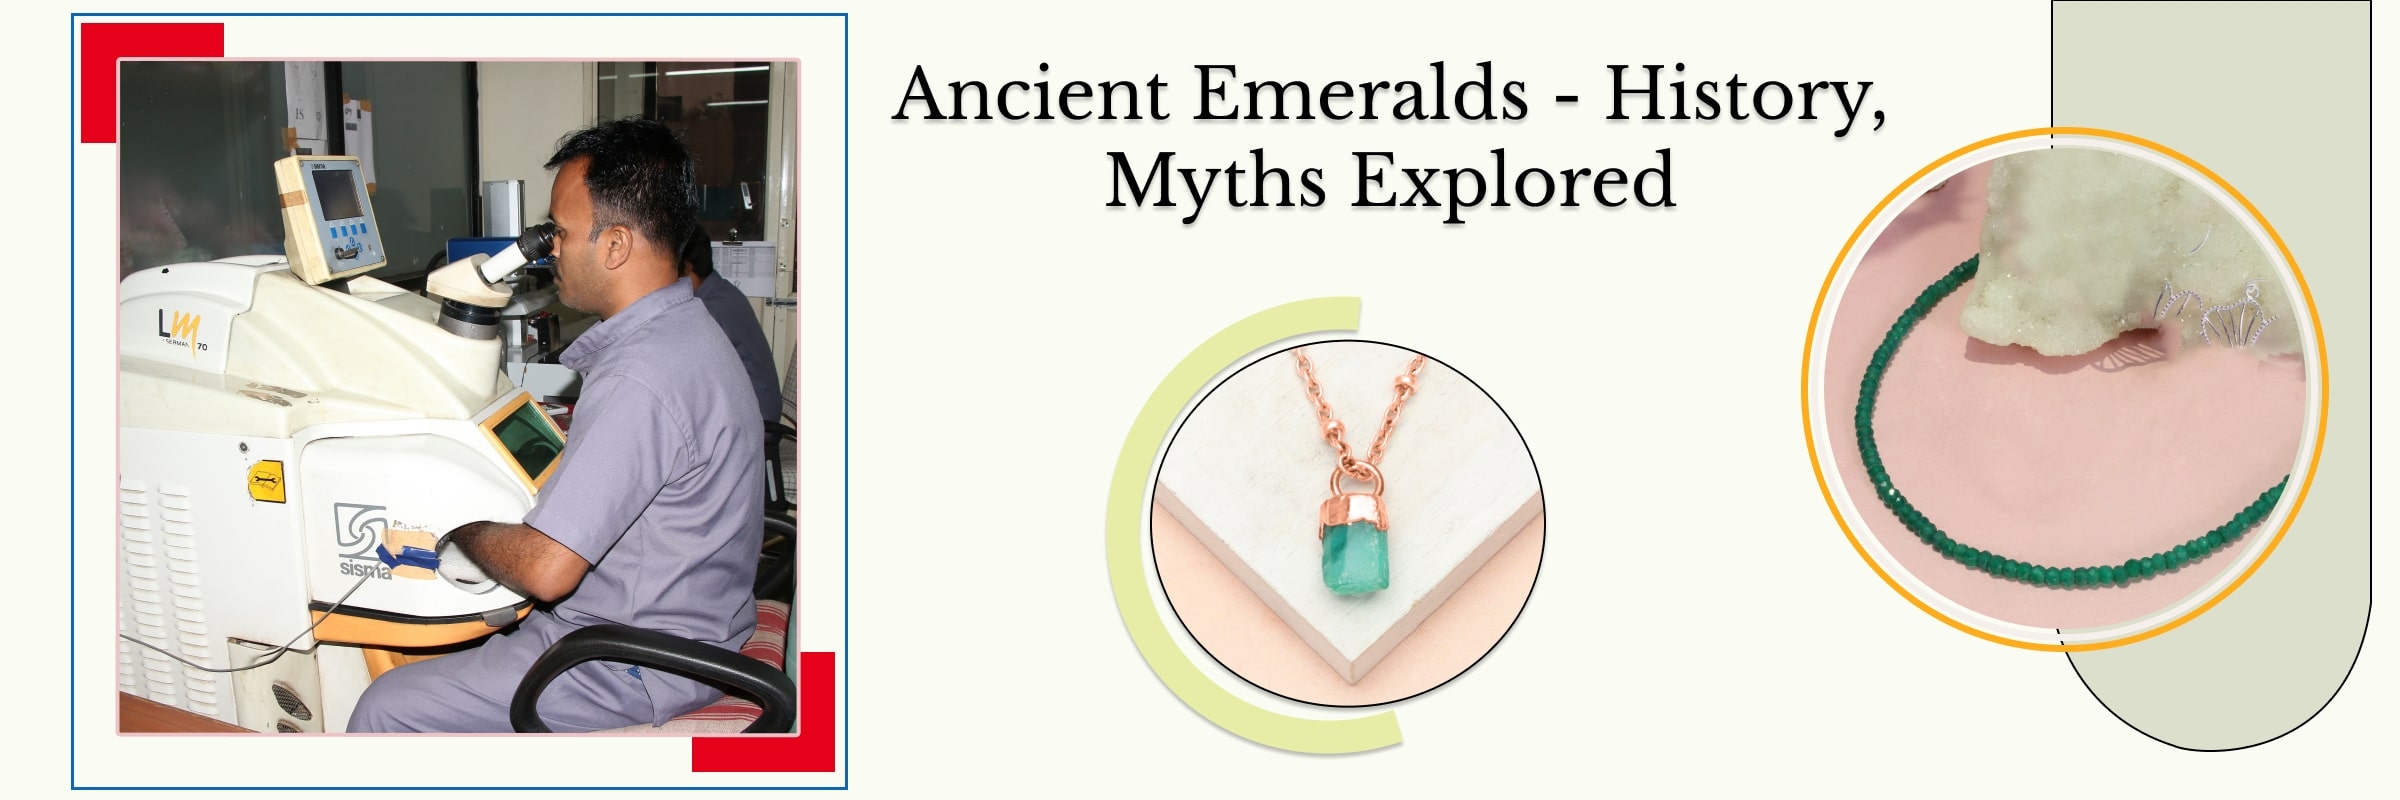 Ancient Emerald History & Mythology